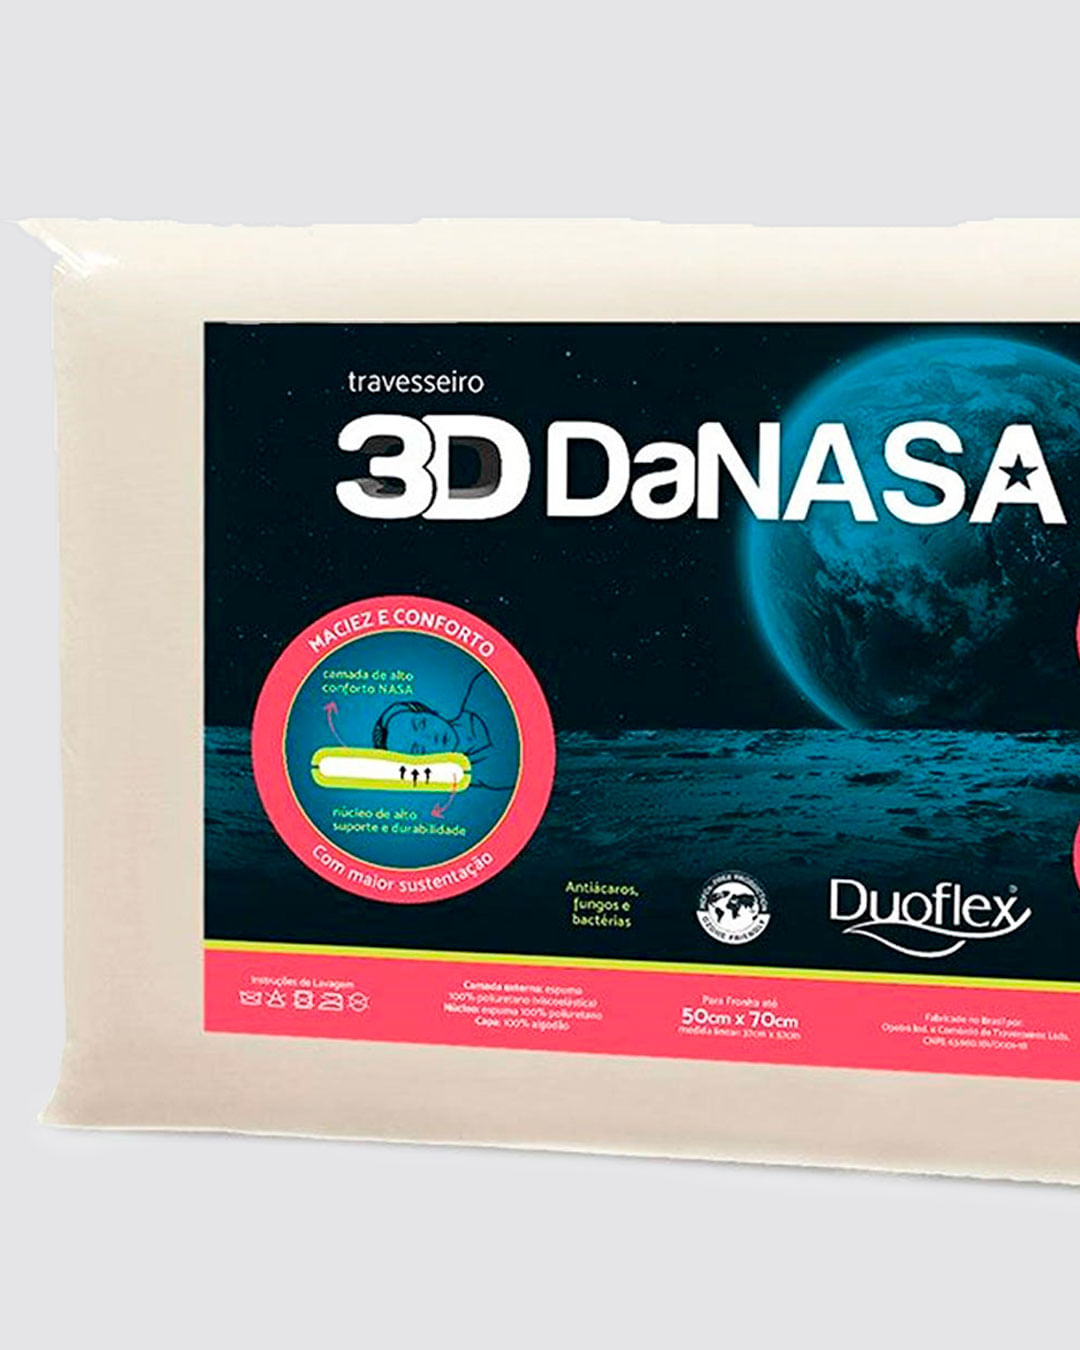 Travesseiro 3D DaNasa Duoflex Cores Sortidas